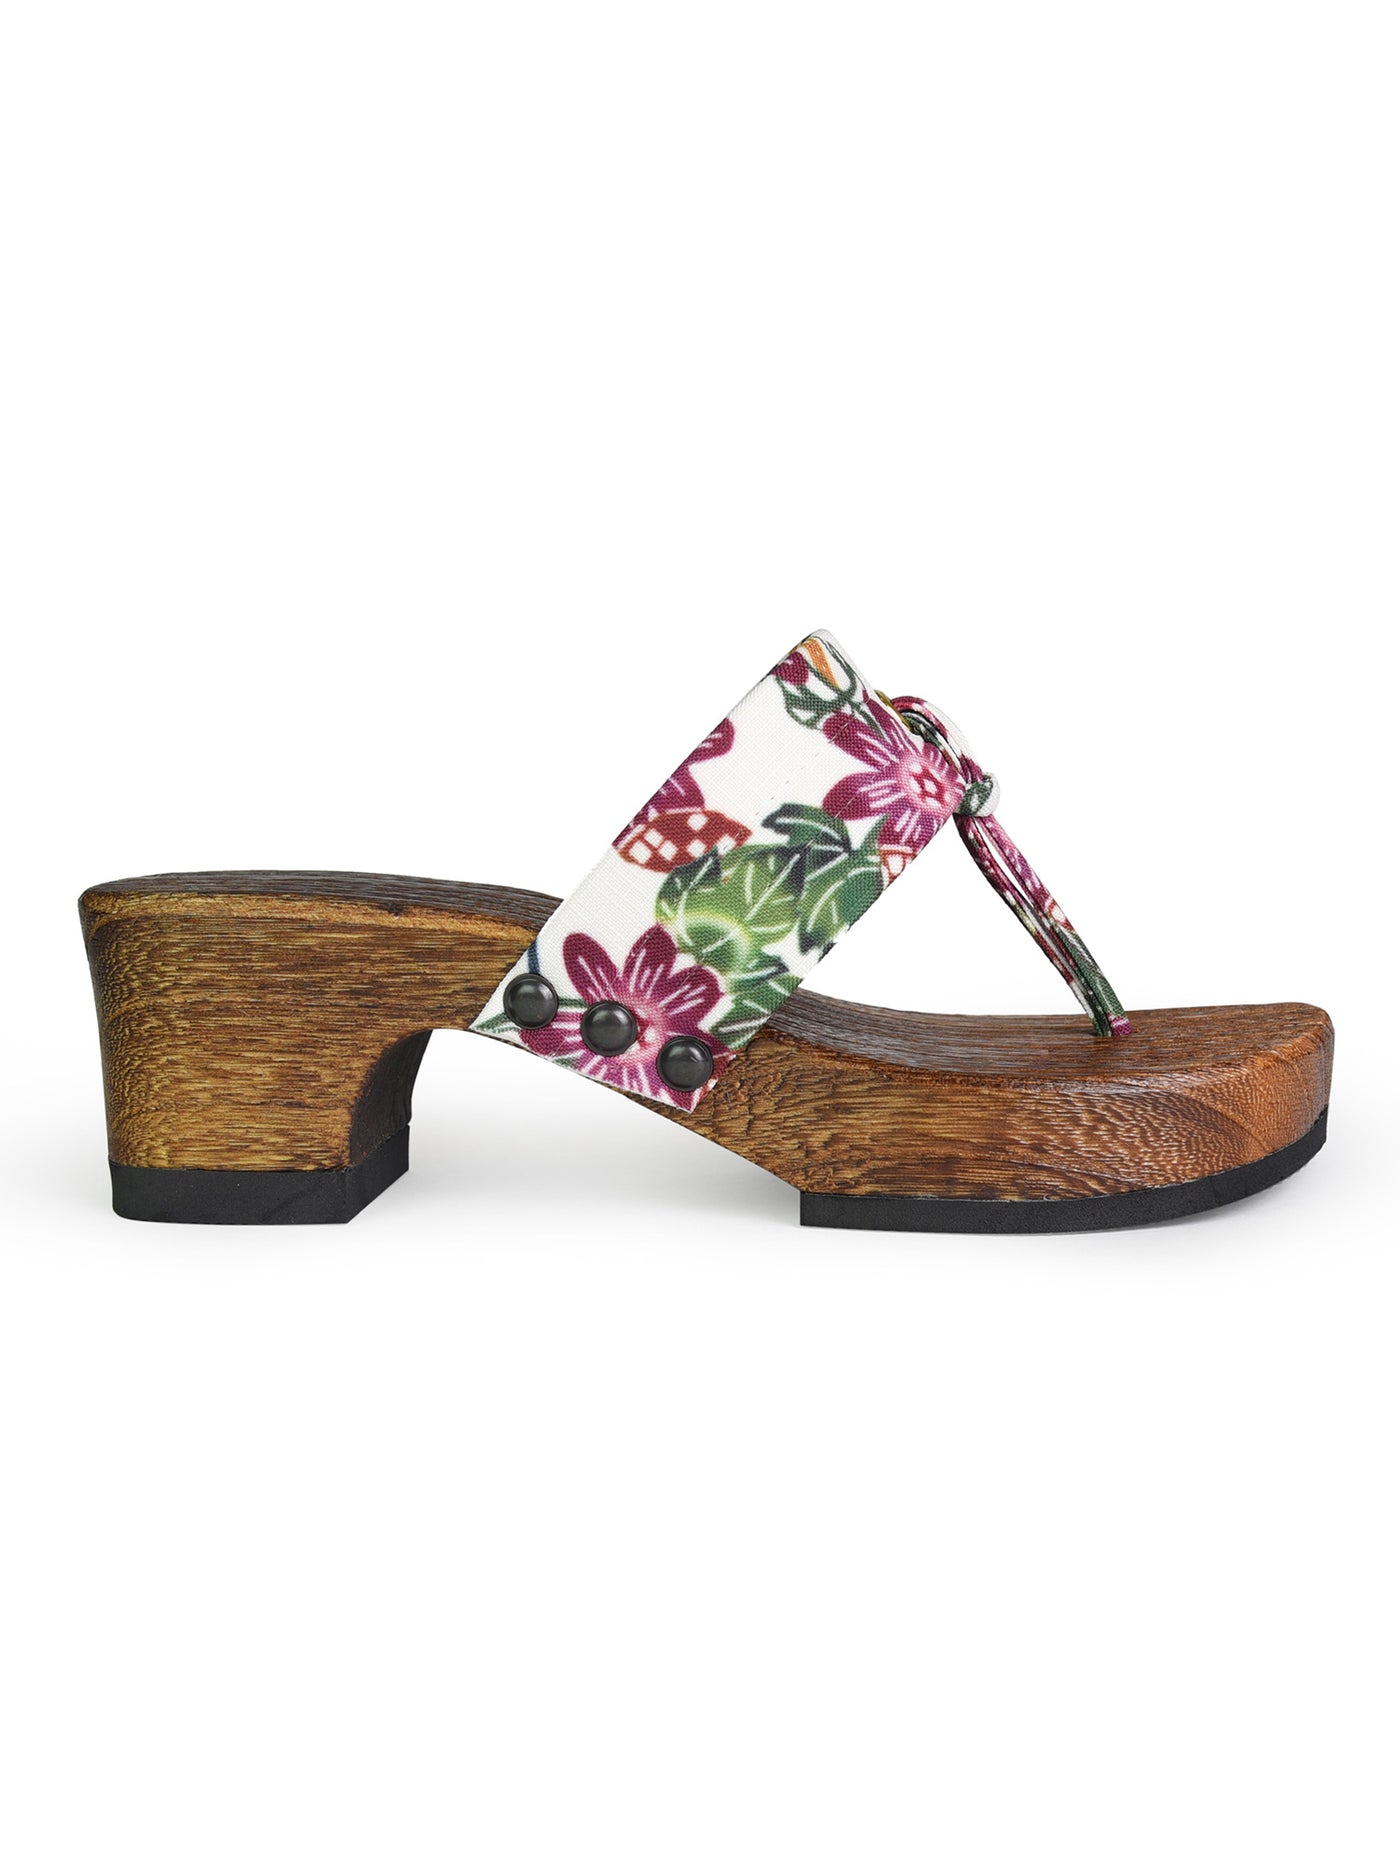 Bingata Wooden Geta Sandals in Passion Flower